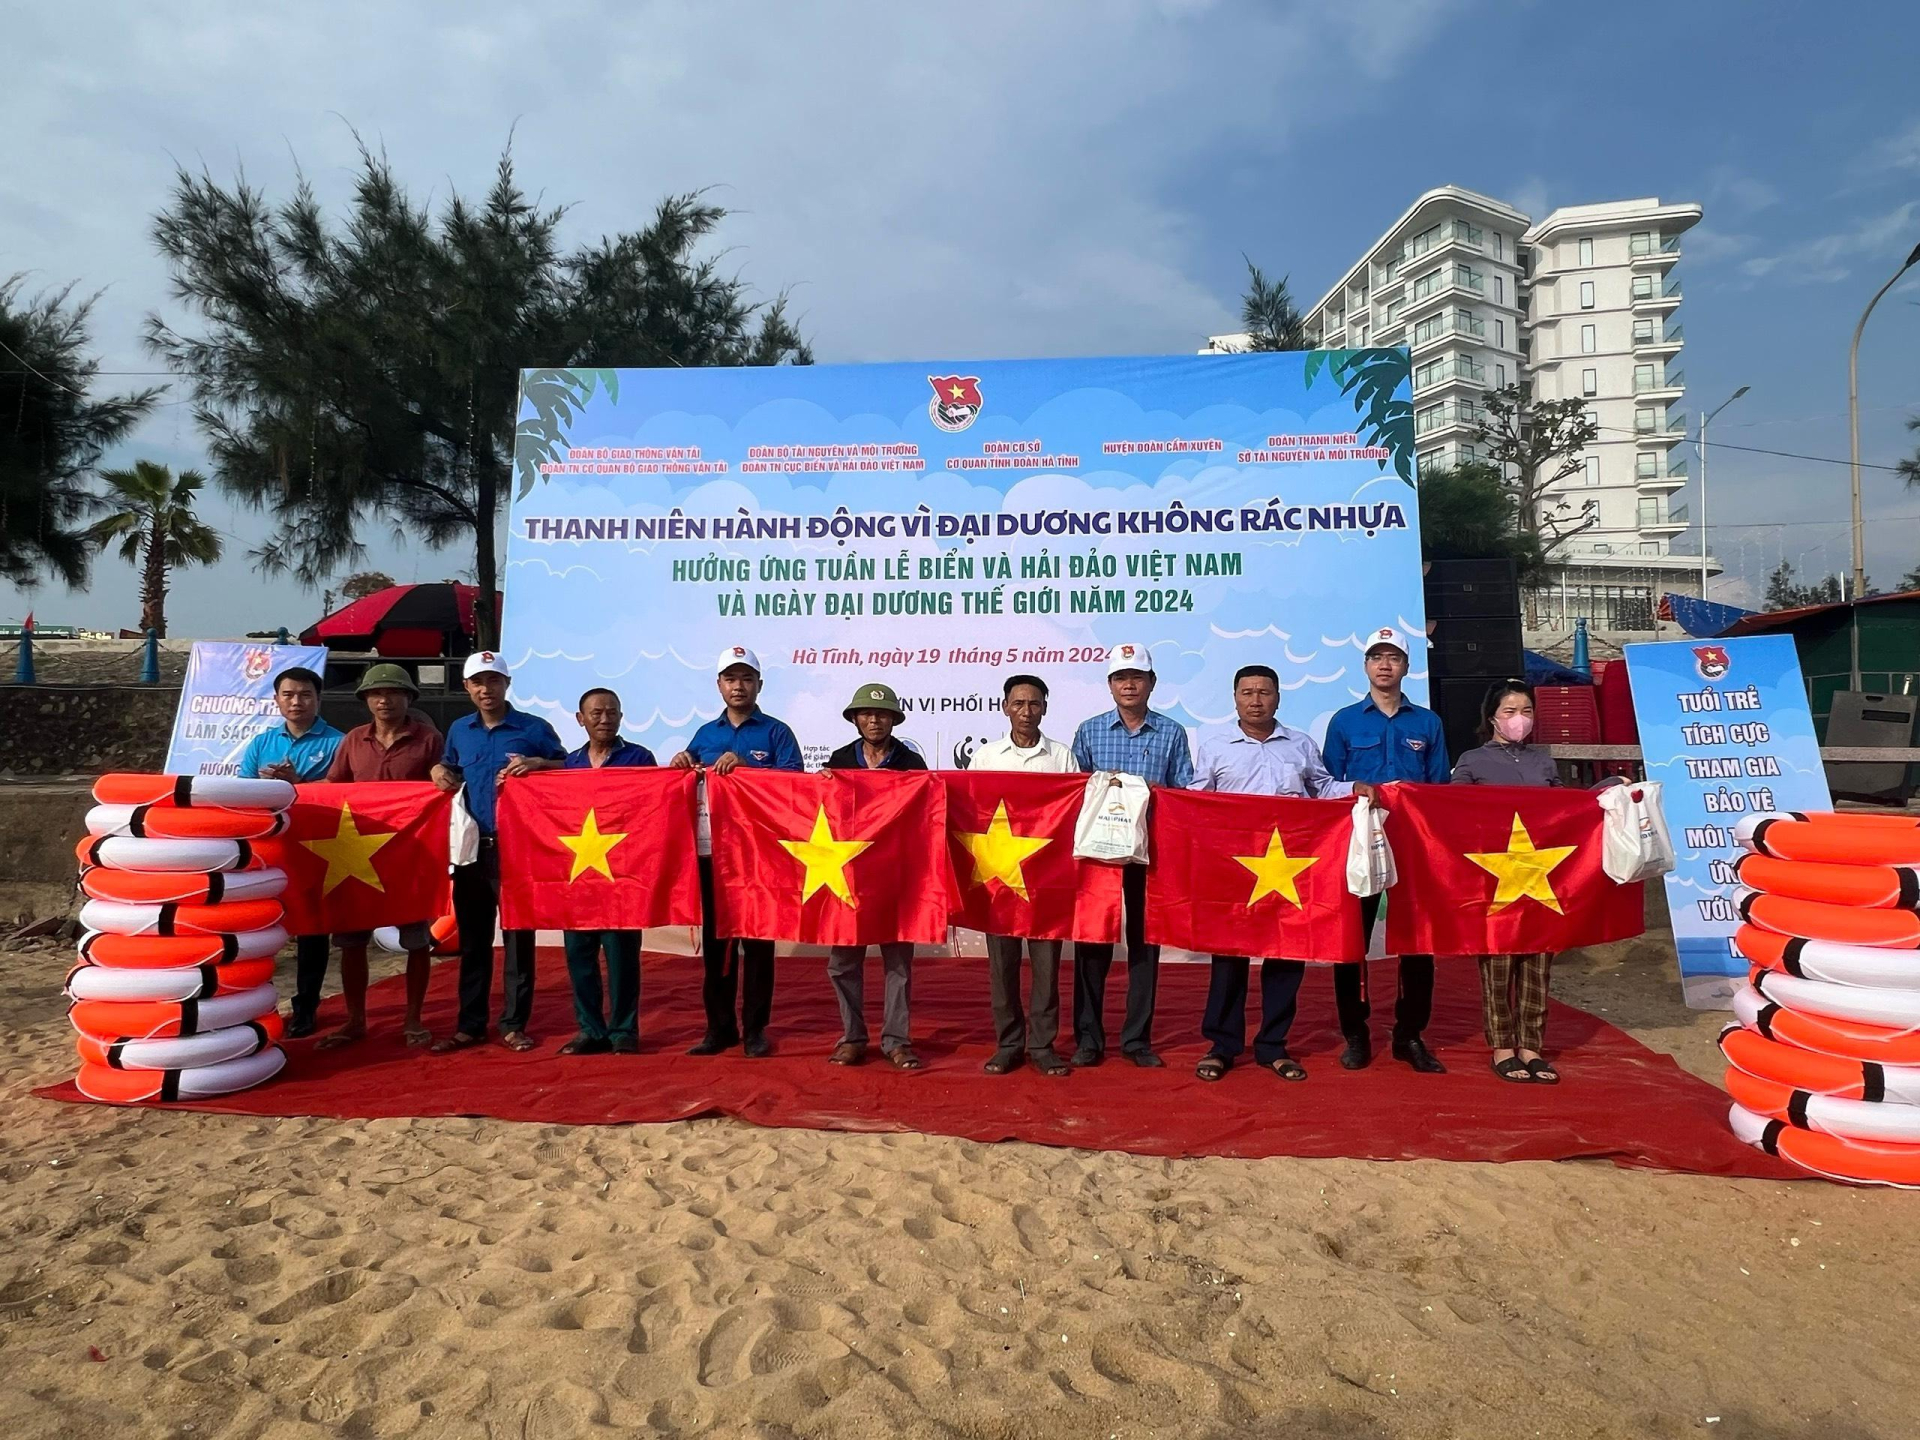 Đoàn thanh niên Cục Biển và Hải đảo Việt Nam: Ra quân làm sạch biển hưởng ứng Tuần lễ biển đảo Việt Nam 2024 - ảnh 3